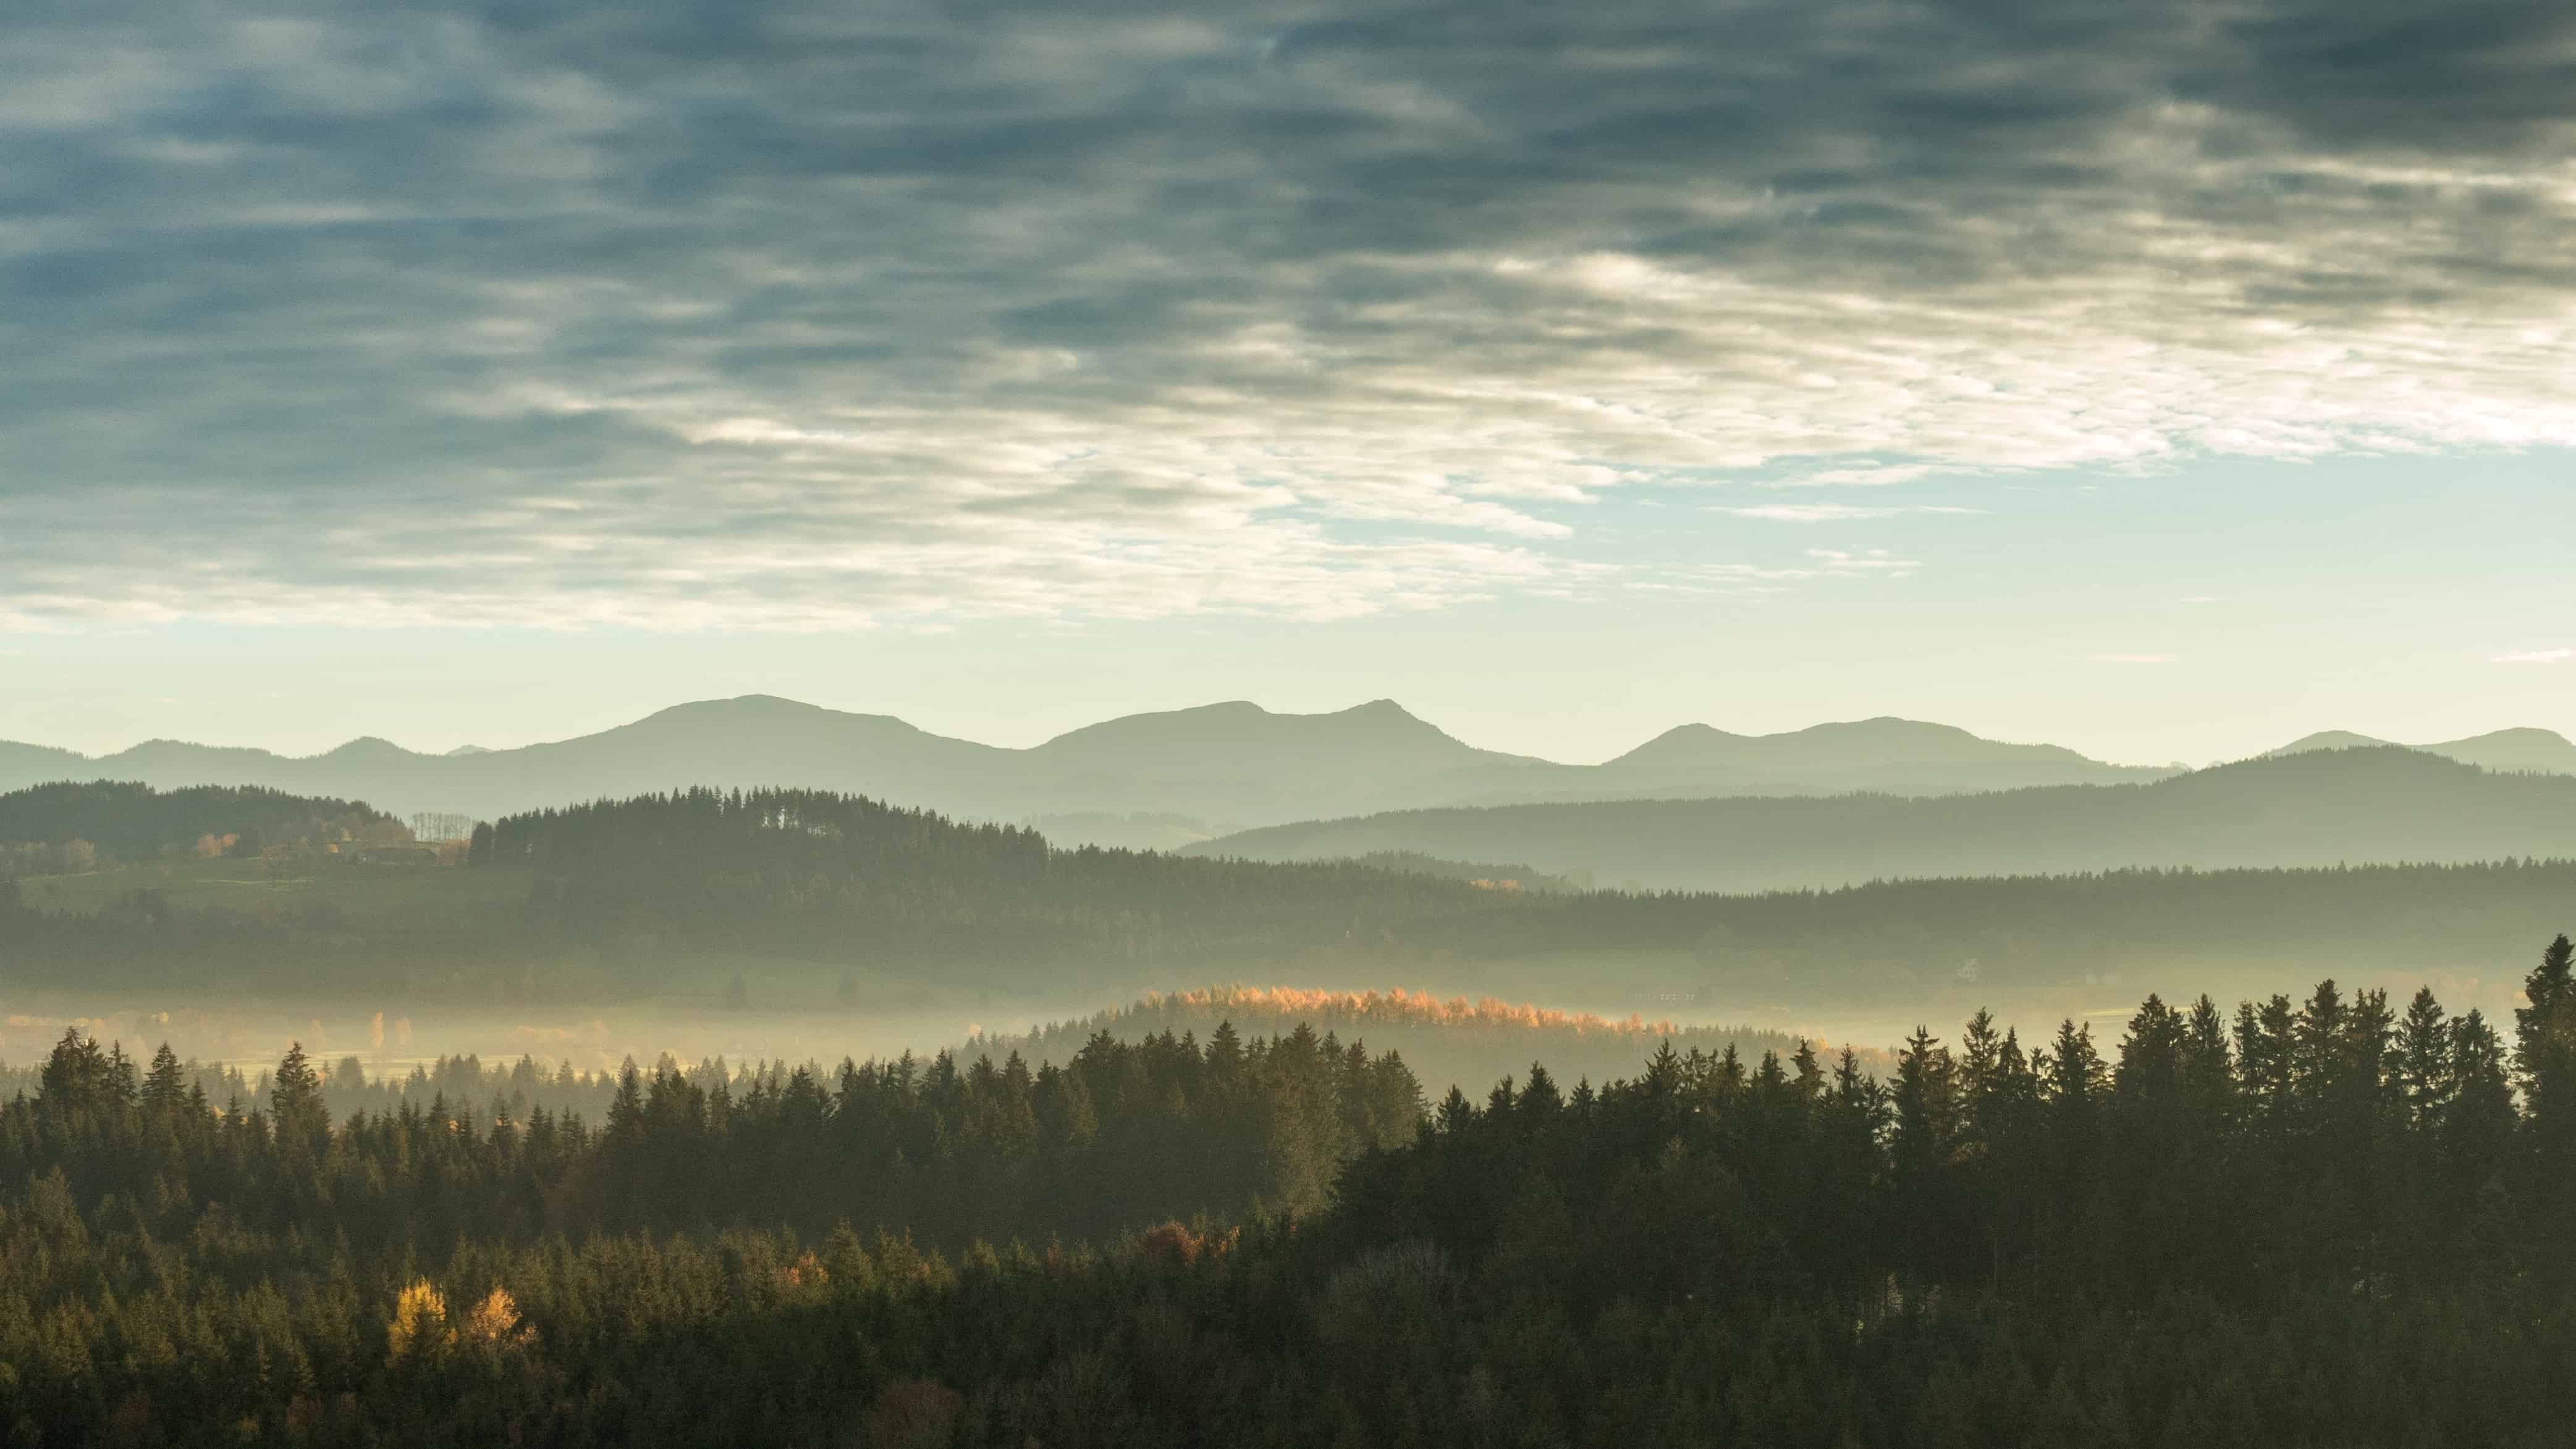 Hình ảnh miễn phí: sương mù, bình minh, phong cảnh, hoàng hôn, sương mù,  núi, thiên nhiên, bầu trời